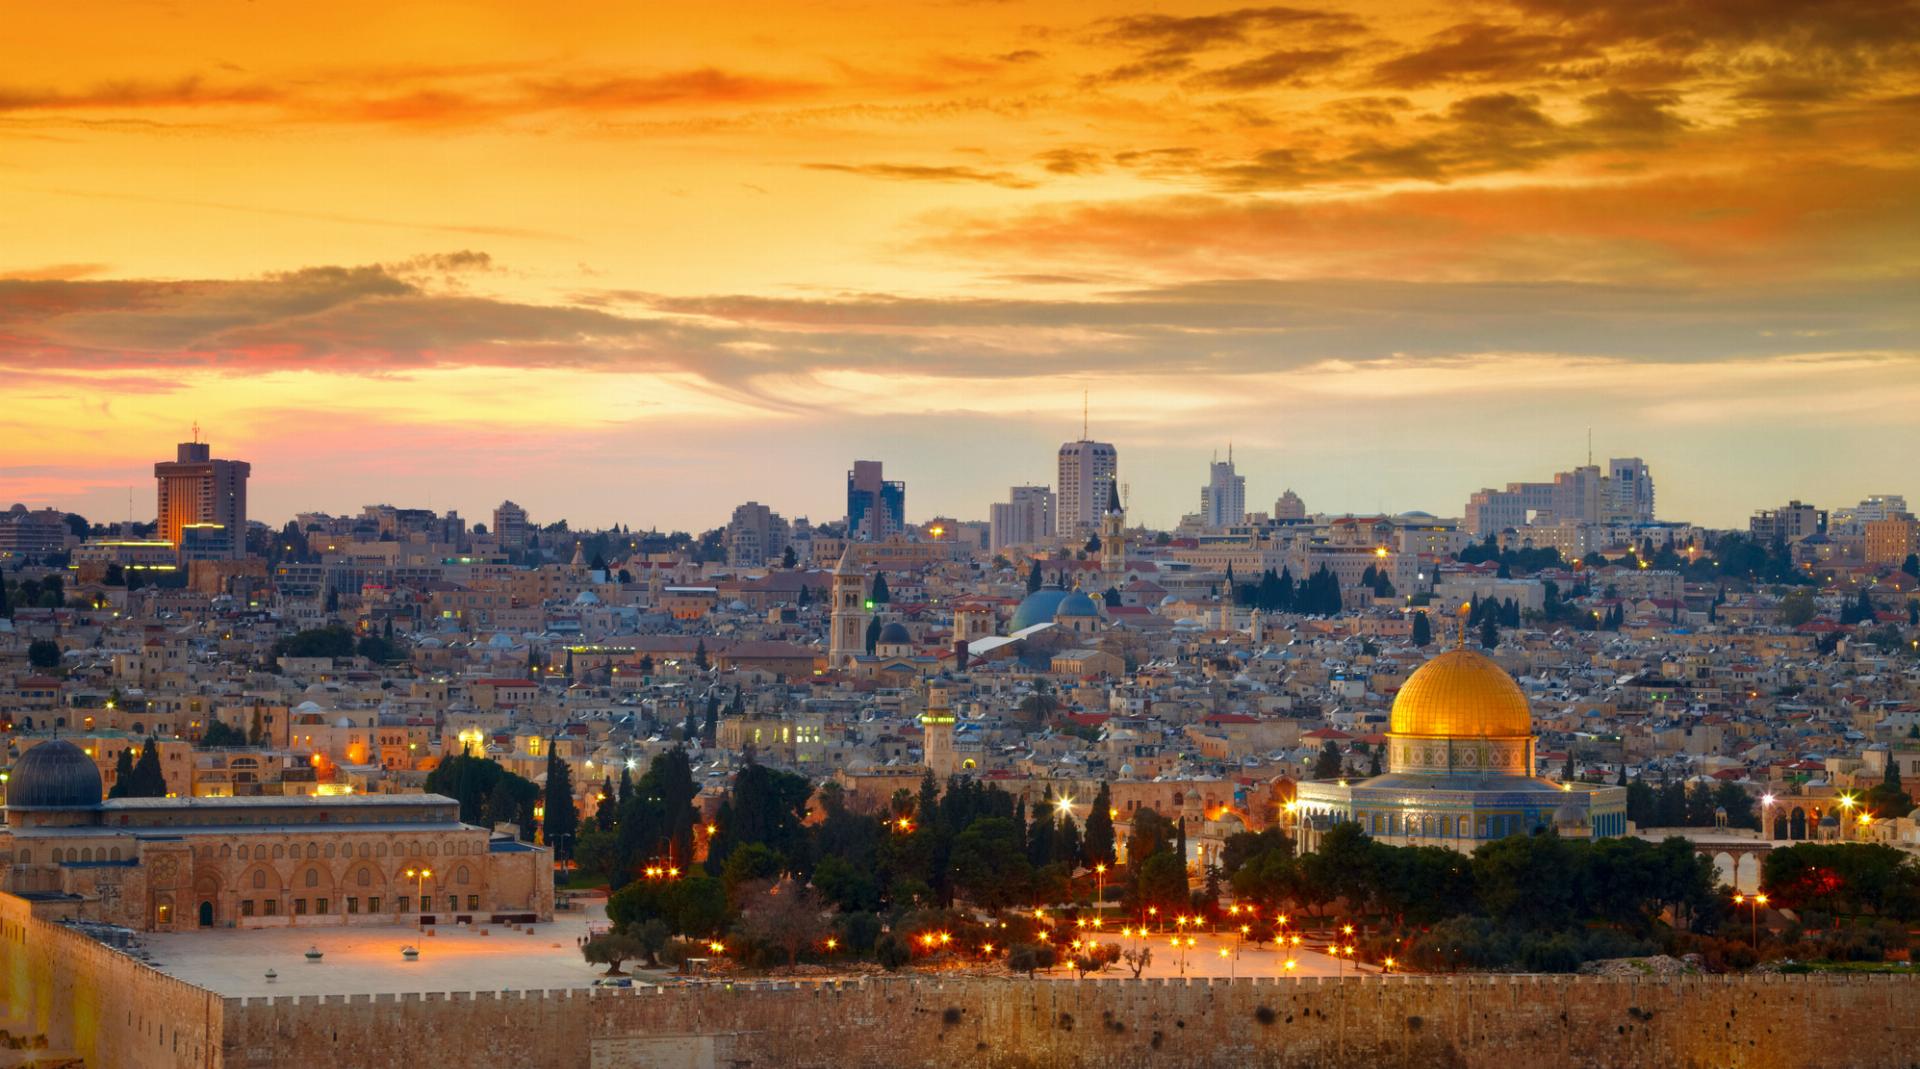 יתרונות של נופש בירושלים והסביבה